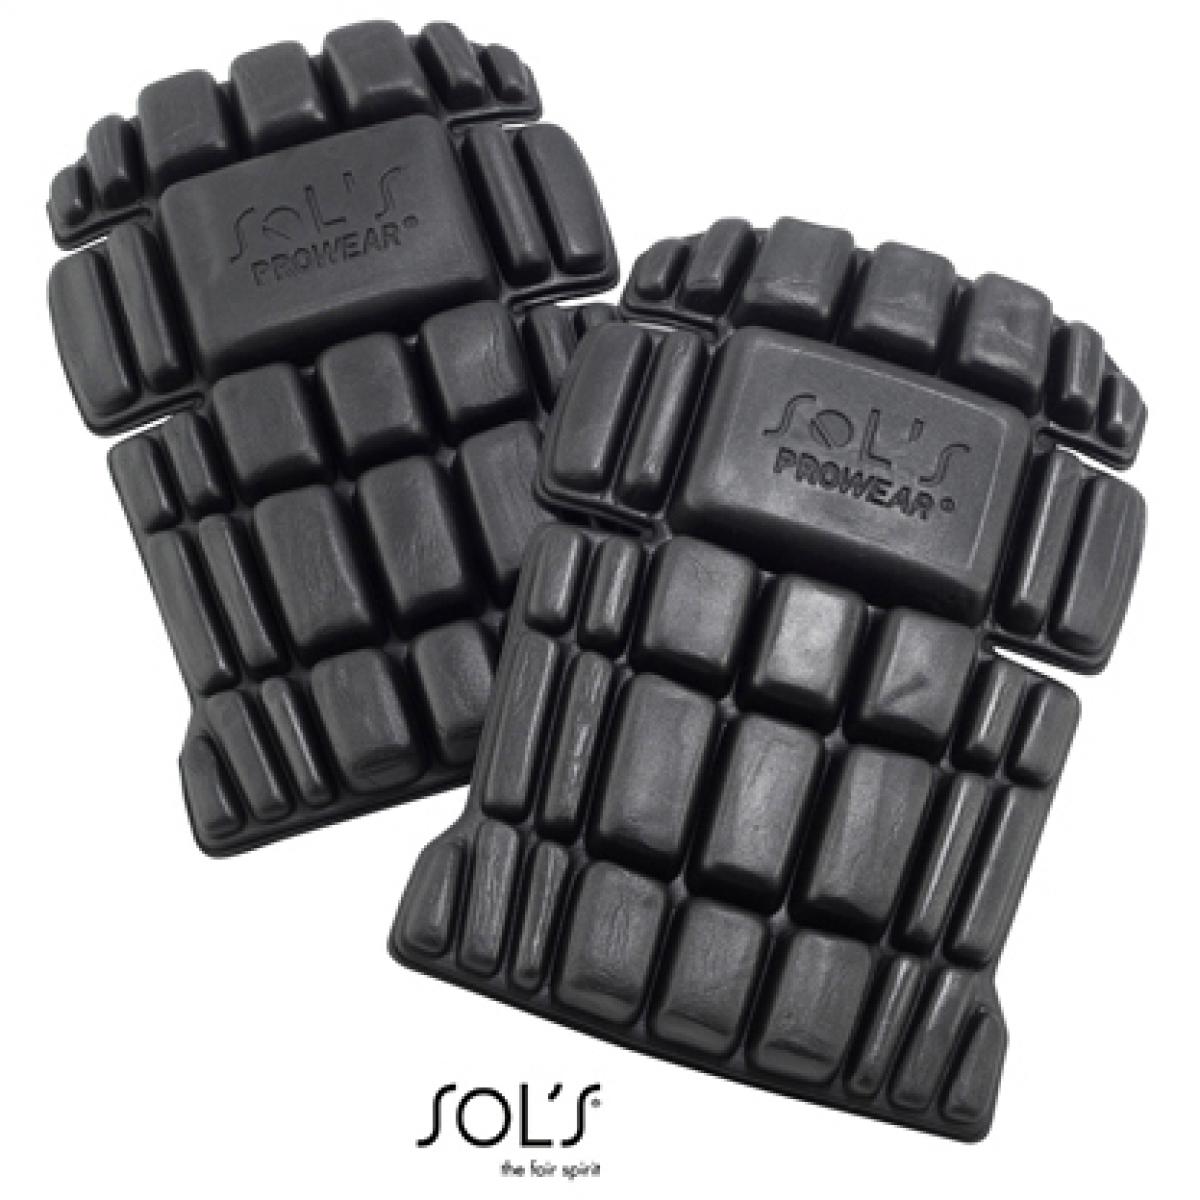 Hersteller: SOLs ProWear Herstellernummer: 80601 Artikelbezeichnung: Protection Knee Pads Protect Pro (1 Paar) Farbe: Black